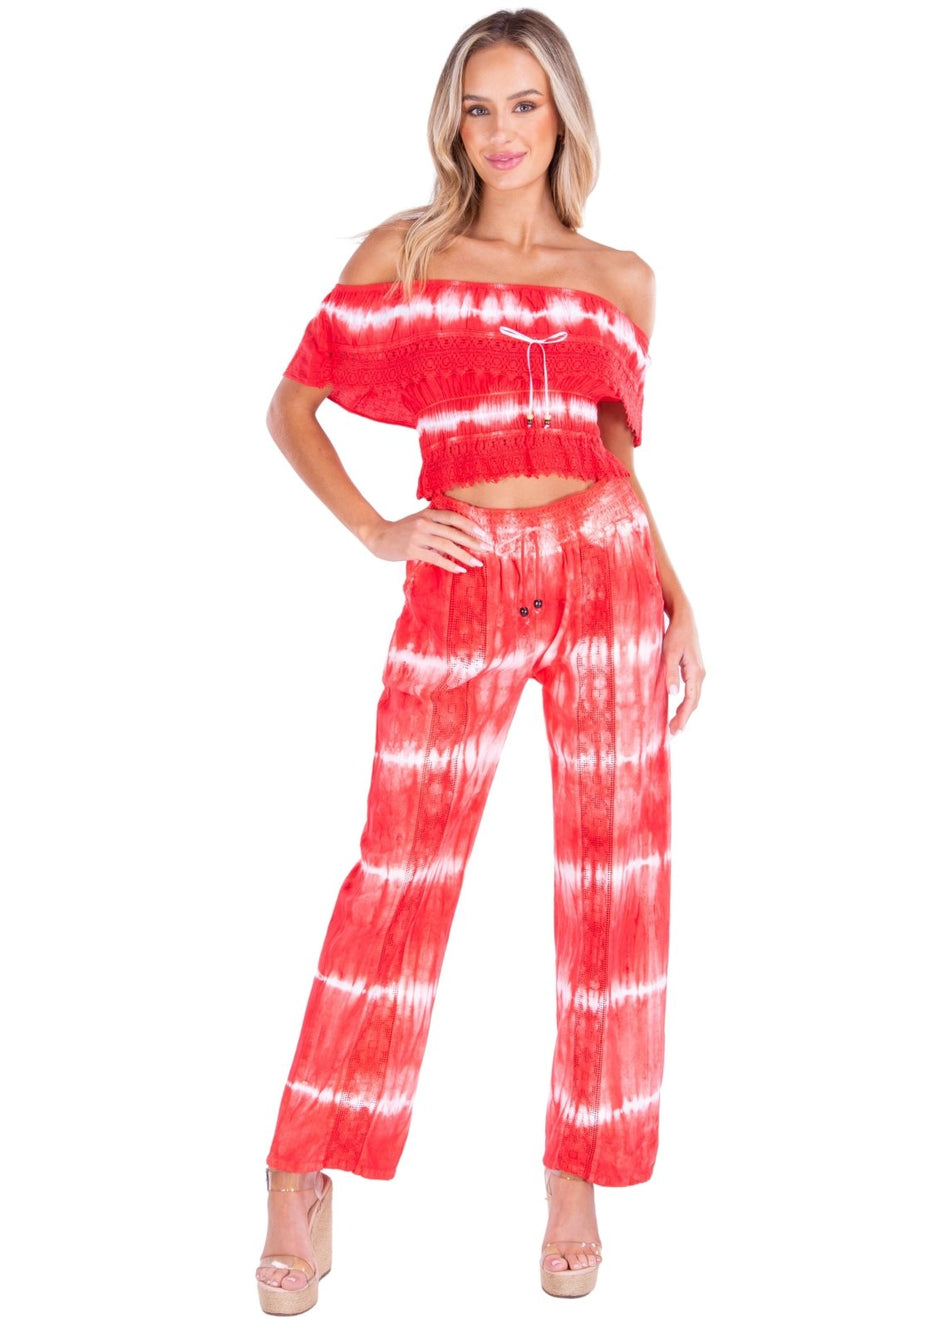 Magnolia' Crochet Front Detail Pants Tie Dye Red - Seaspice Resort Wear